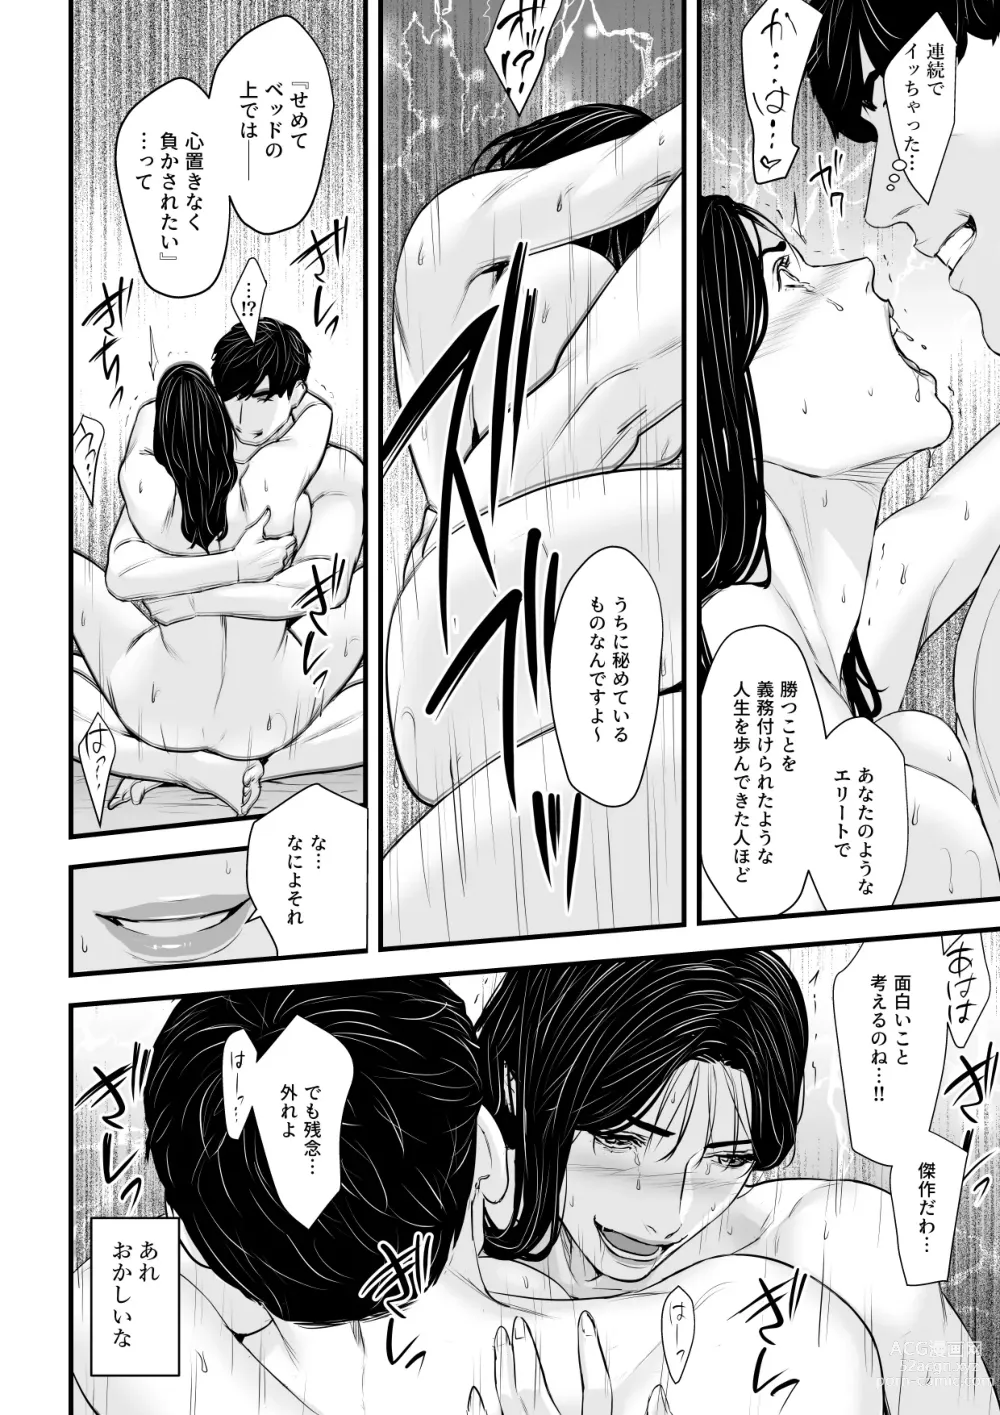 Page 31 of doujinshi Erito onnakachouwa kukkbokusaseraretai